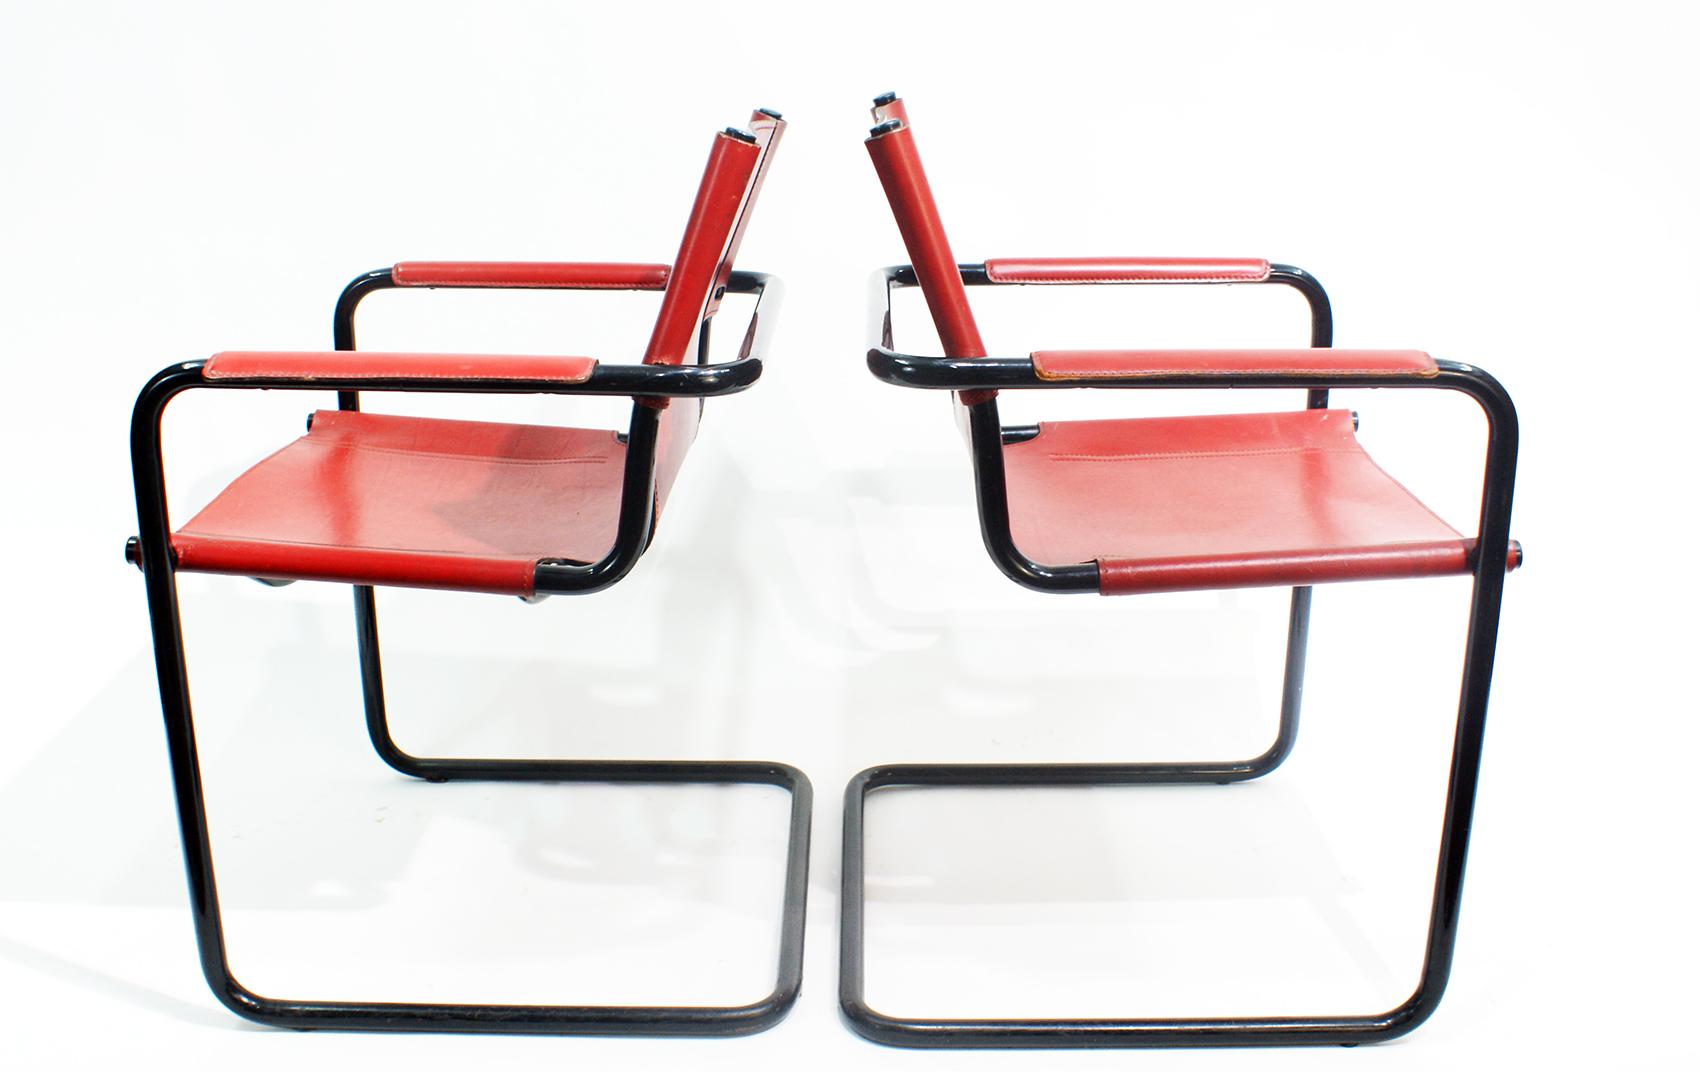 Vintage Matteo Grassi cantilever stylish visitor side chairs, Italie, 1970. Signé Matteo Grassi sur le cuir. Il s'agit d'une chaise Bauhaus conçue par Mart Stam pour Matteo Grassi dans les années 1970. Dans le style de Marcel Breuer. La chaise est